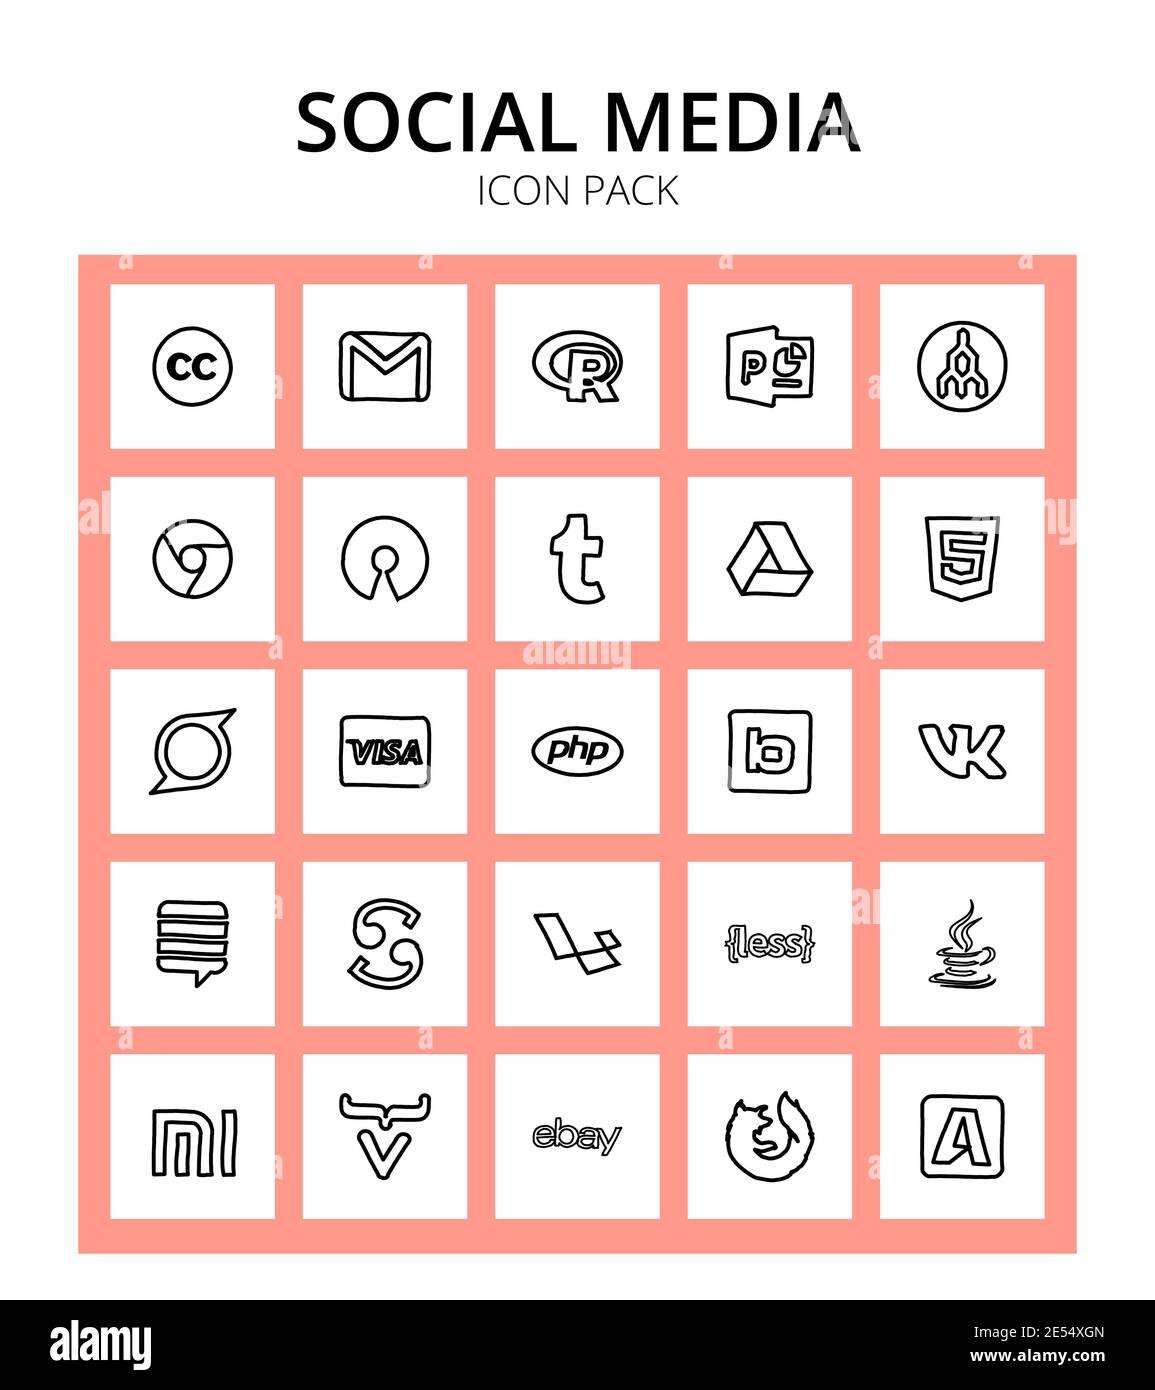 Social Media 25 icônes bimobject, carte de crédit, osi, visa, html éléments de conception vectorielle modifiables Illustration de Vecteur